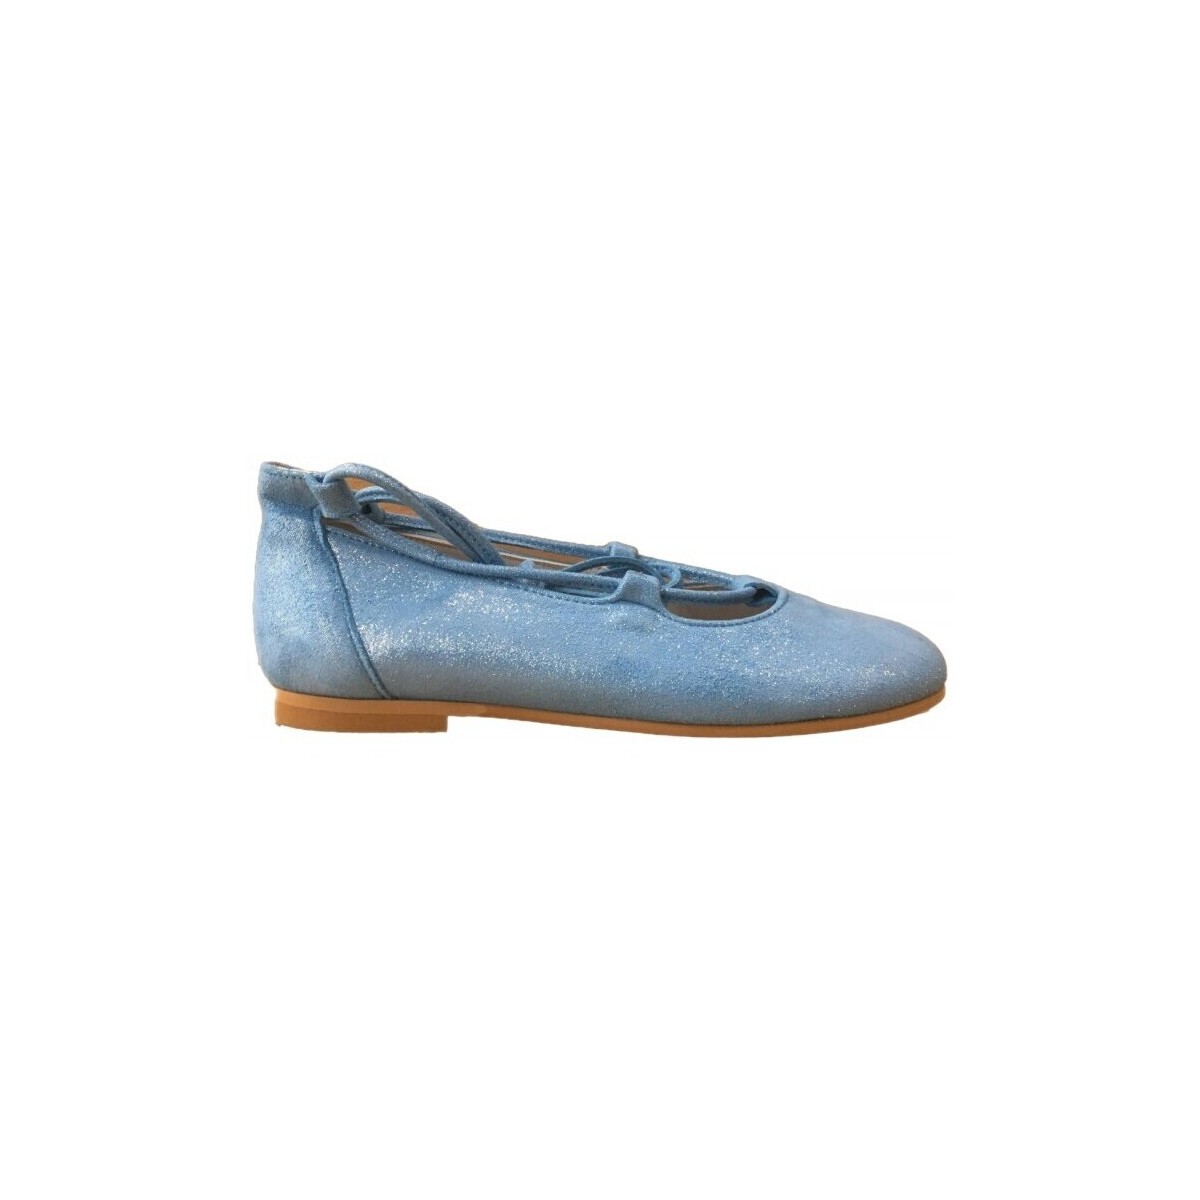 Παπούτσια Κορίτσι Μπαλαρίνες Colores 26228-18 Μπλέ